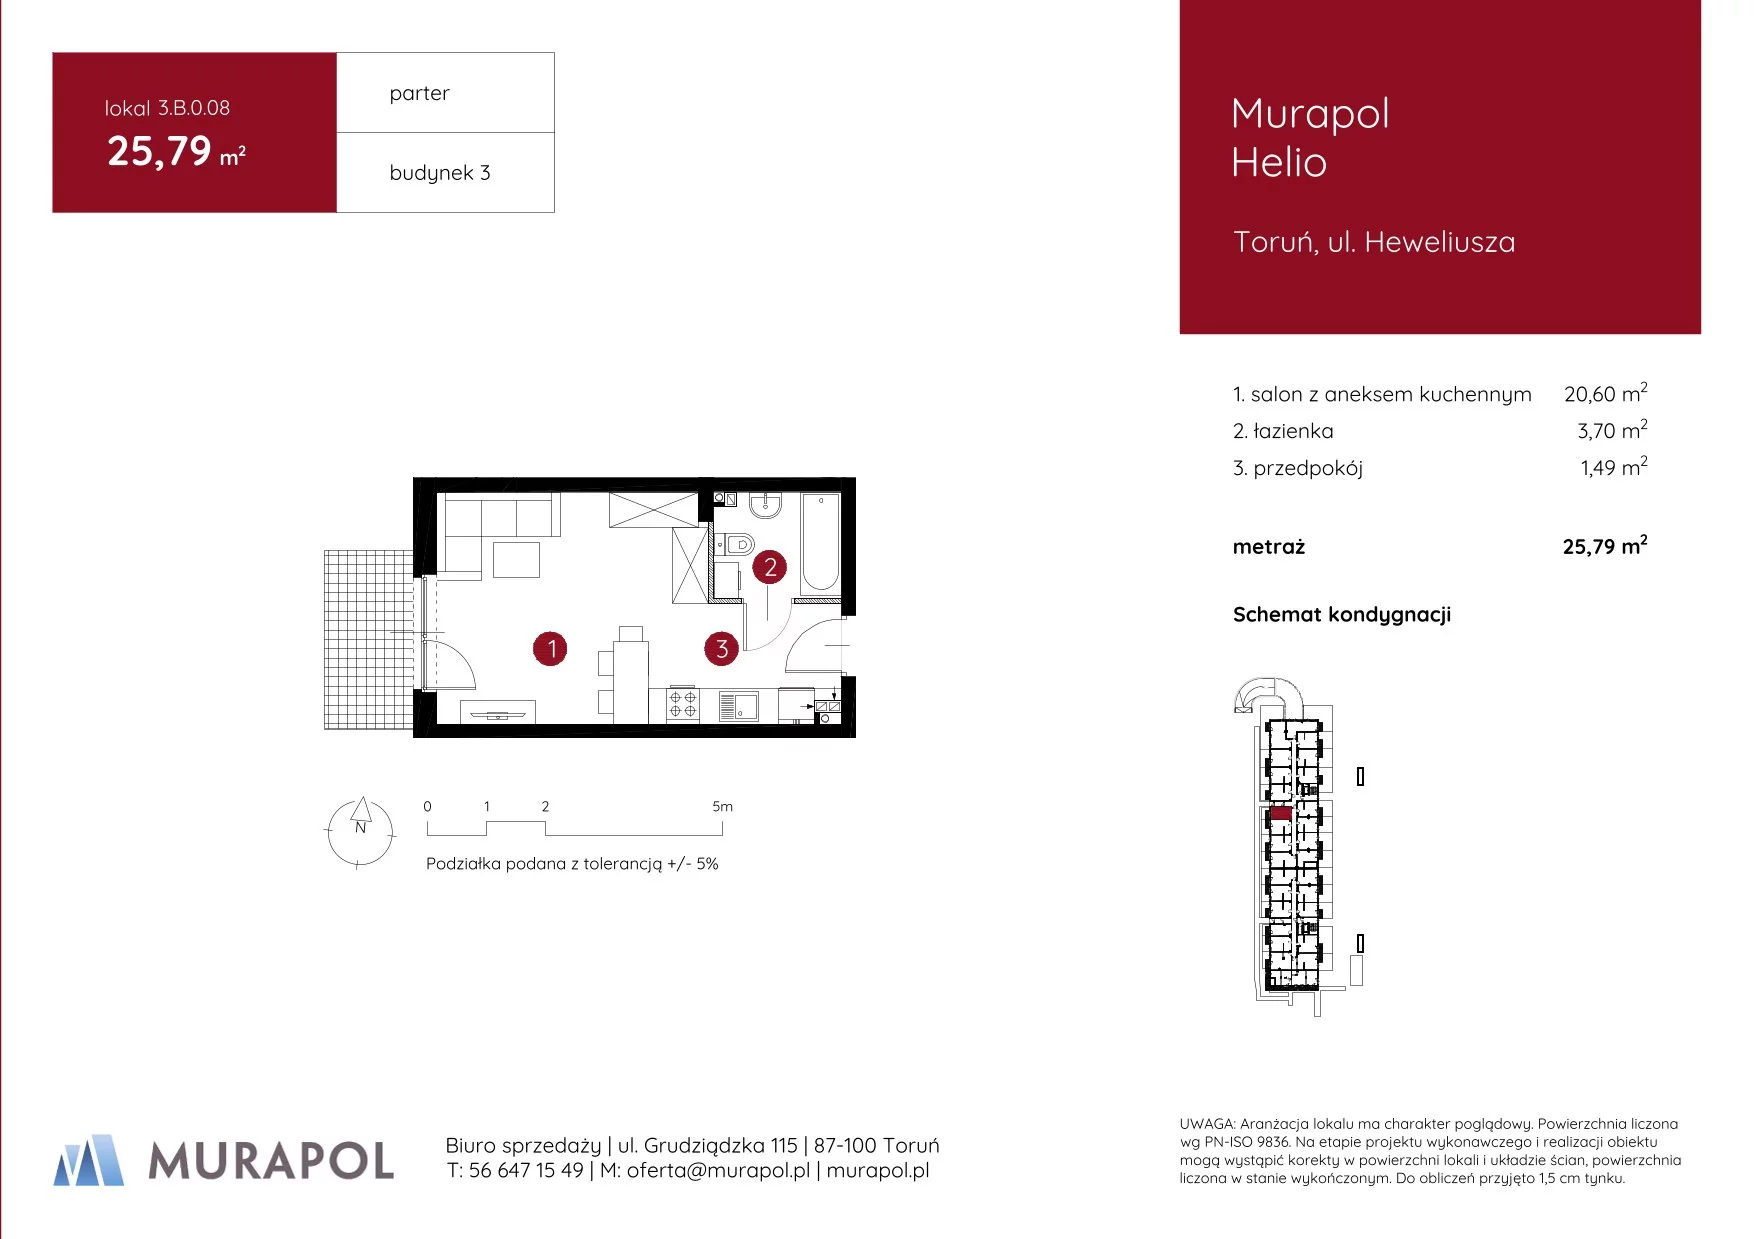 Mieszkanie 25,79 m², parter, oferta nr 3.B.0.08, Murapol Helio, Toruń, Wrzosy, JAR, ul. Heweliusza